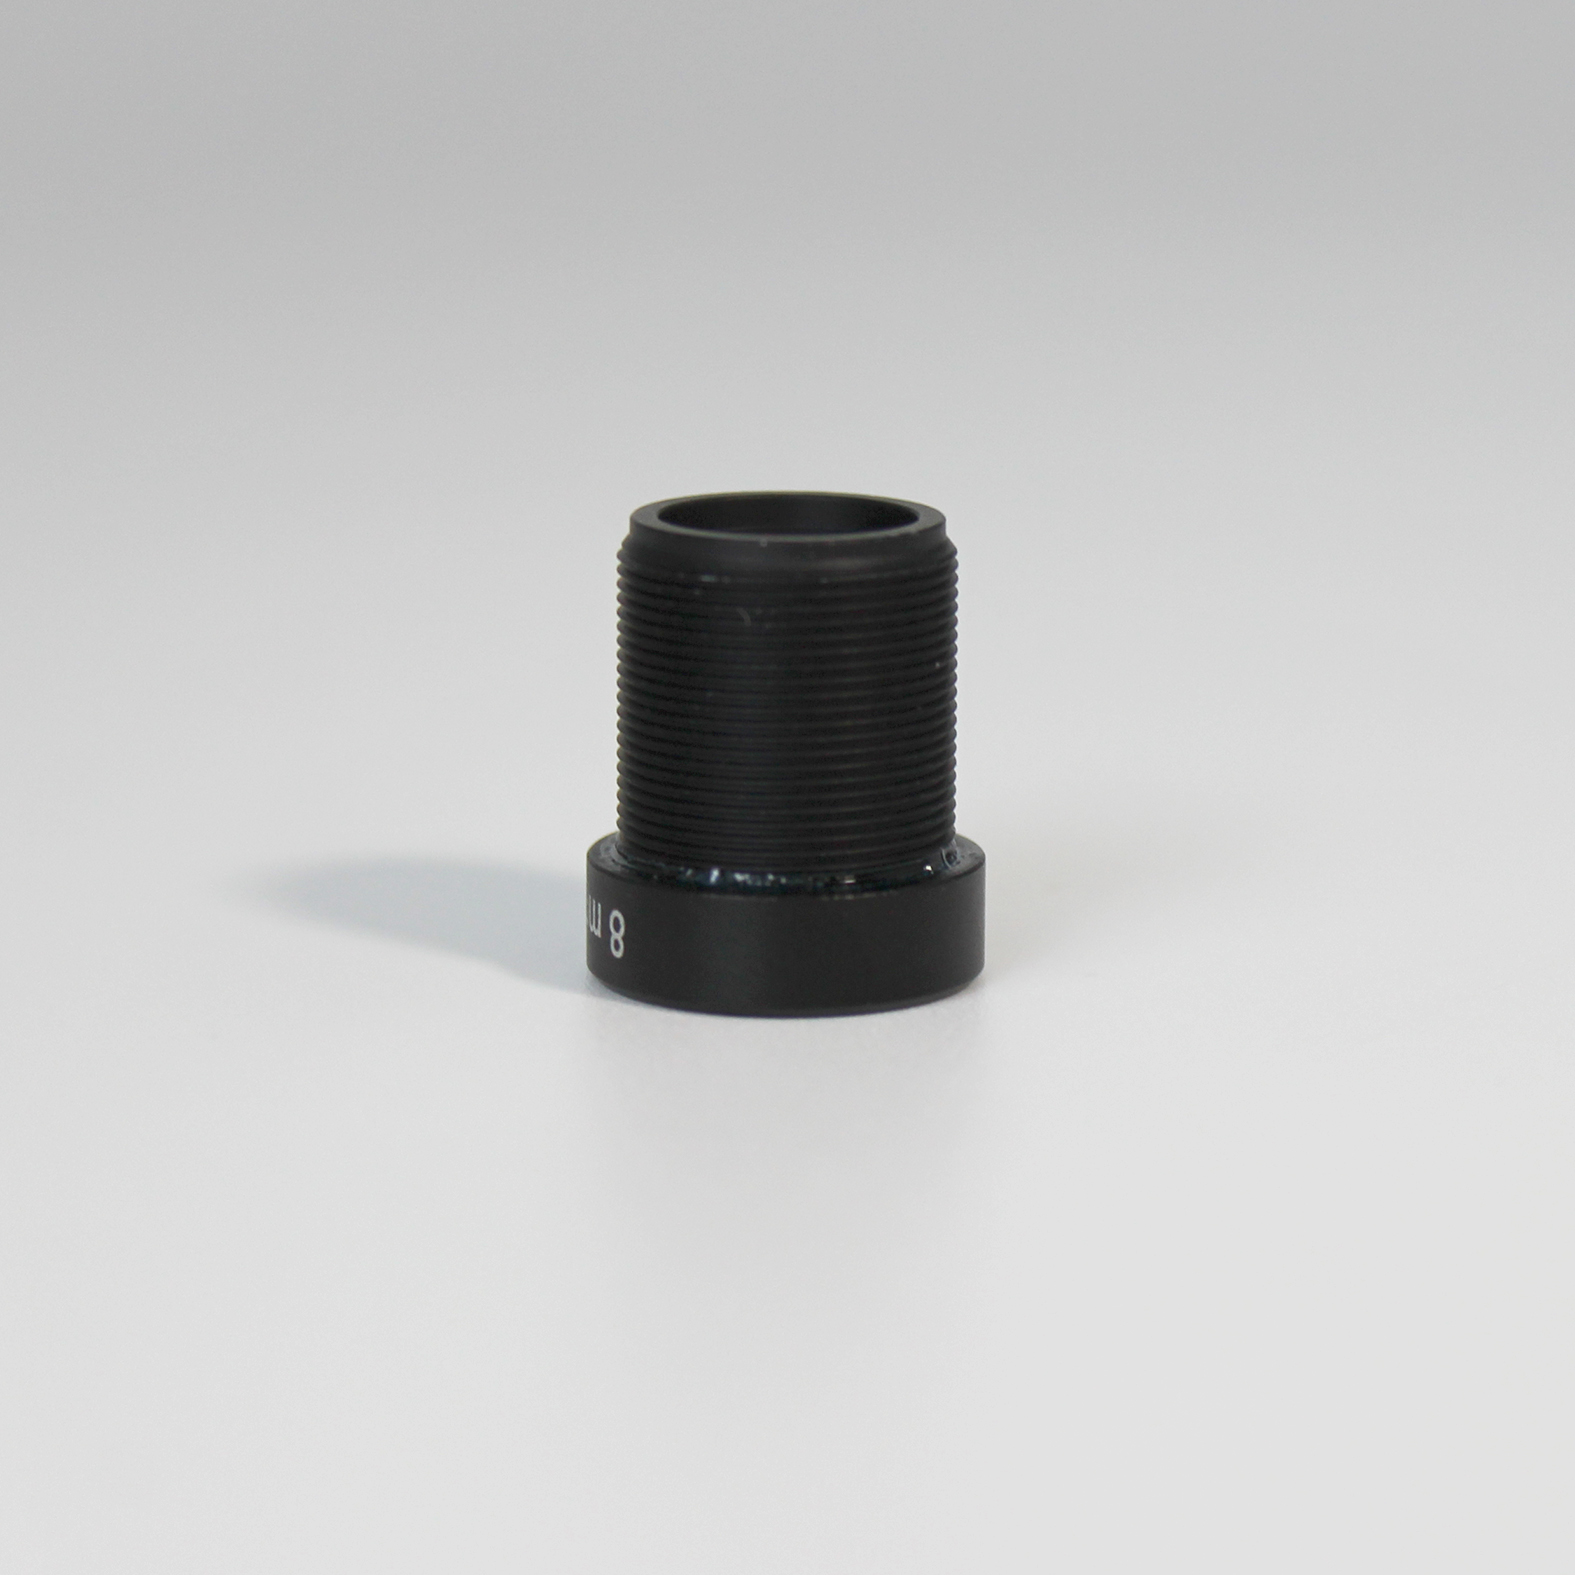 High Quality Optics Industrial Cameras M12 Lens